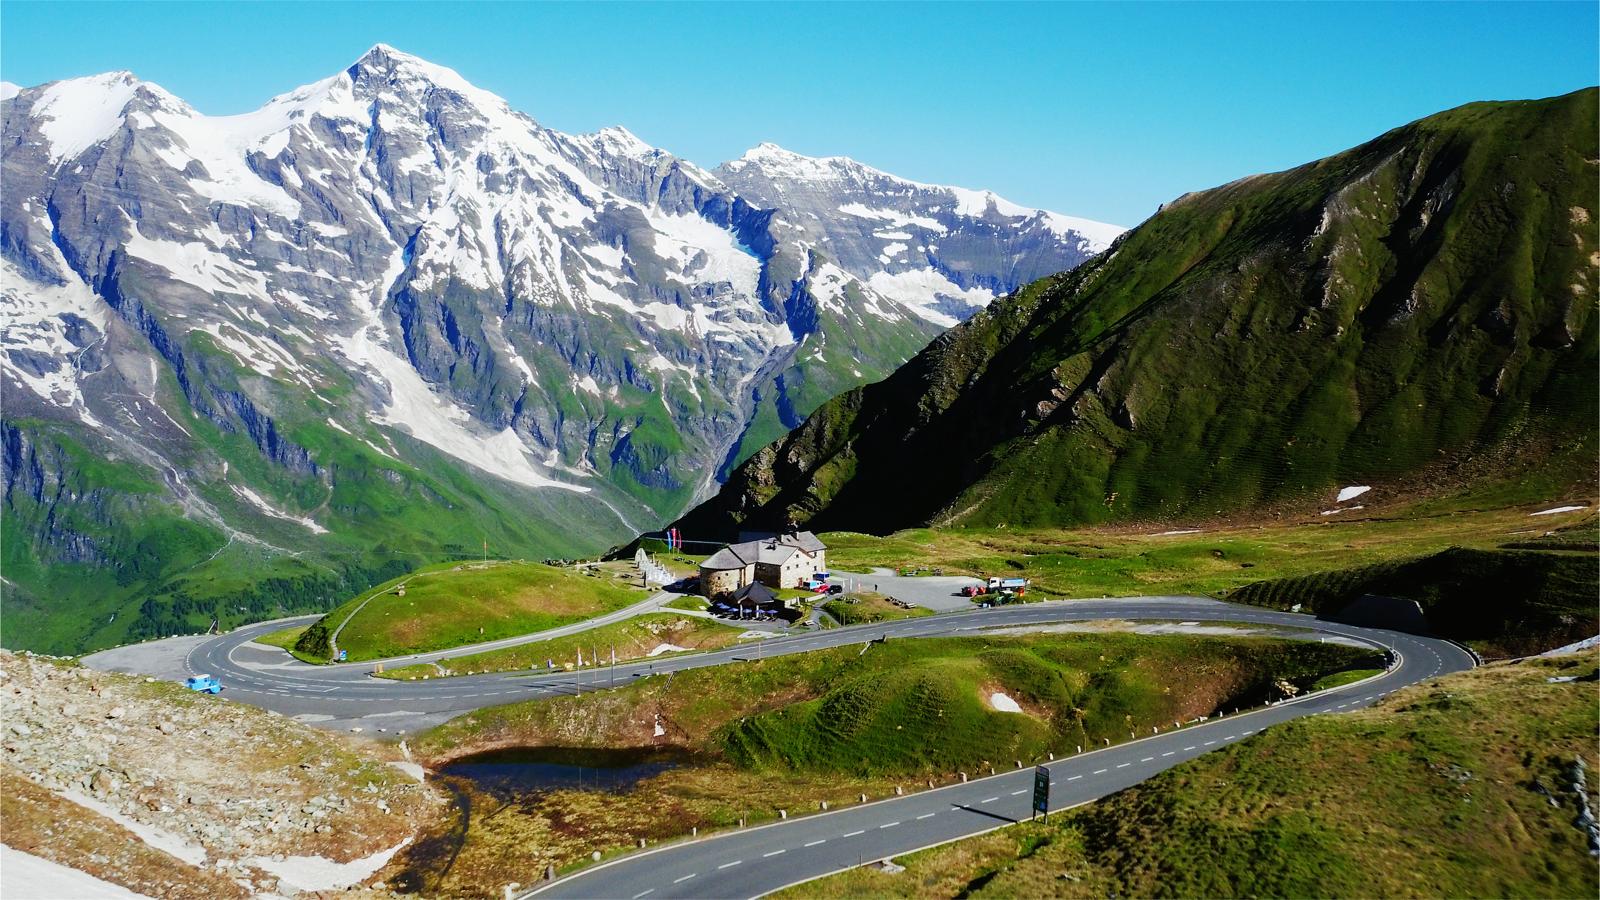 Carretera alpina de Grossglockner (Austria). El impresionante escenario de esta ruta escénica alpina combina el arte de la construcción de carreteras de montaña con una experiencia de naturaleza y paisaje singular, que recorre el corazón del Parque Nacional Hohe Tauern, protegido desde 1992, una de las reservas naturales más grandes de Europa Central